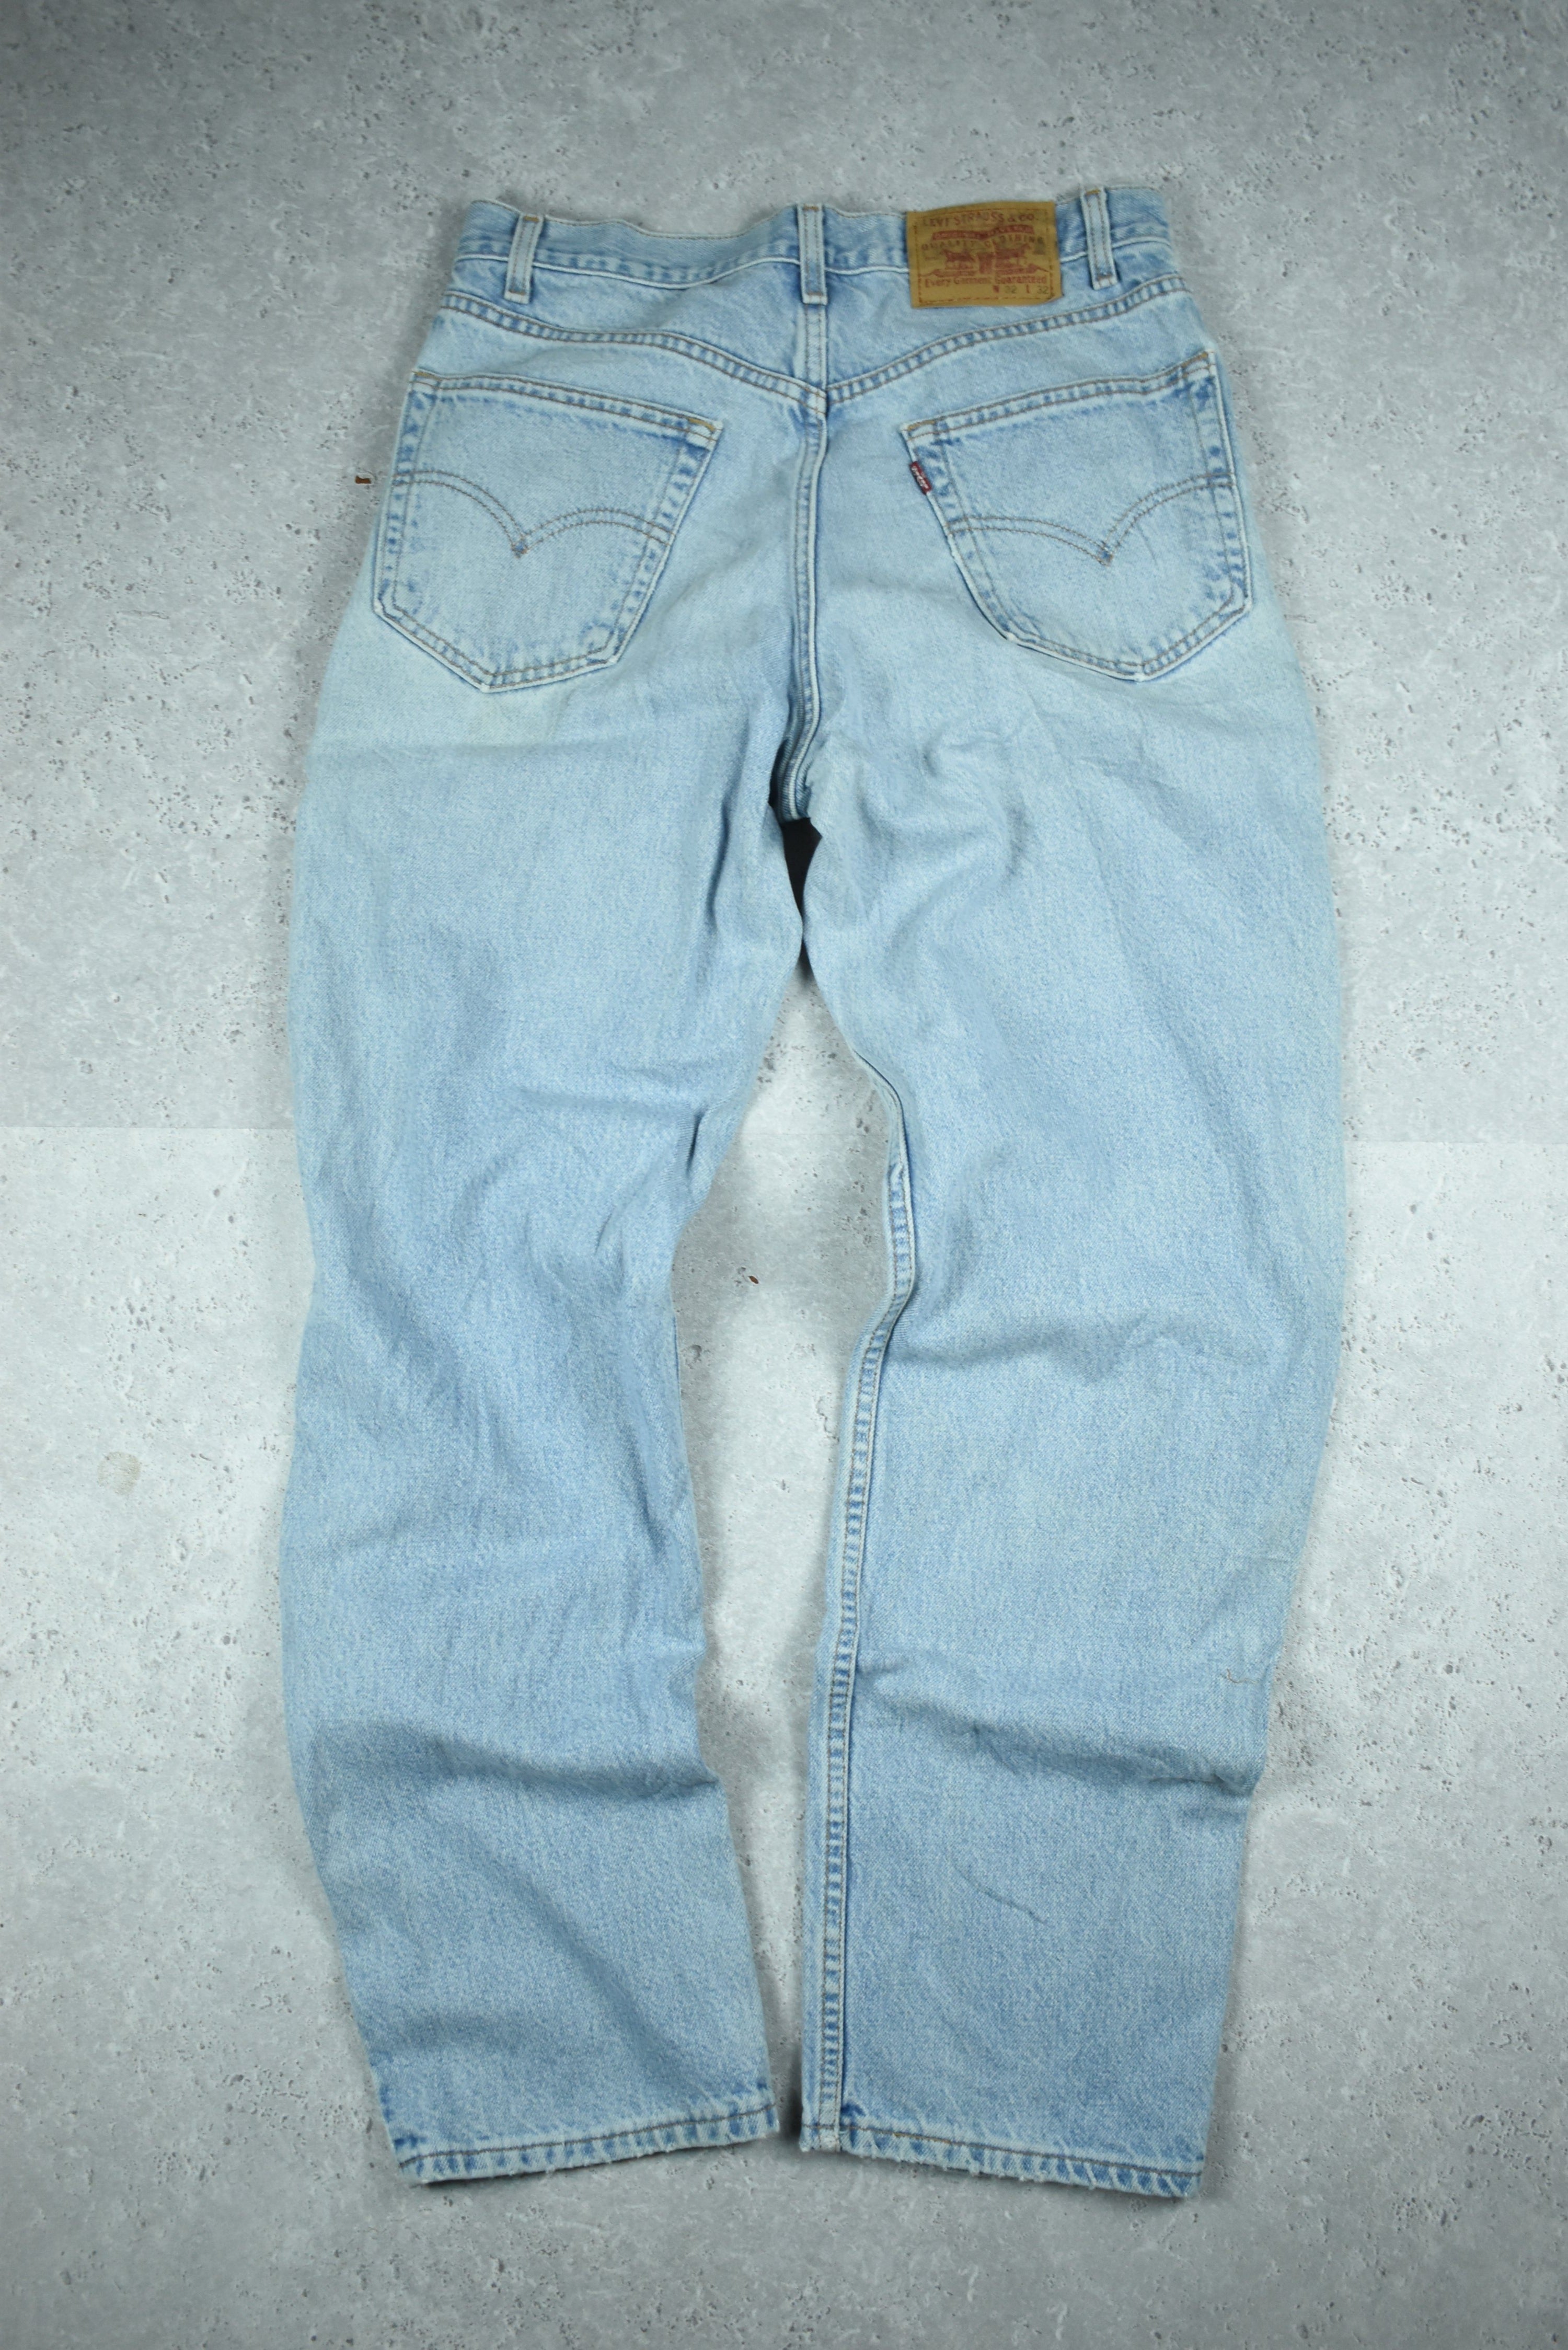 Vintage Levis Relaxed Fit Denim Jeans 32x32